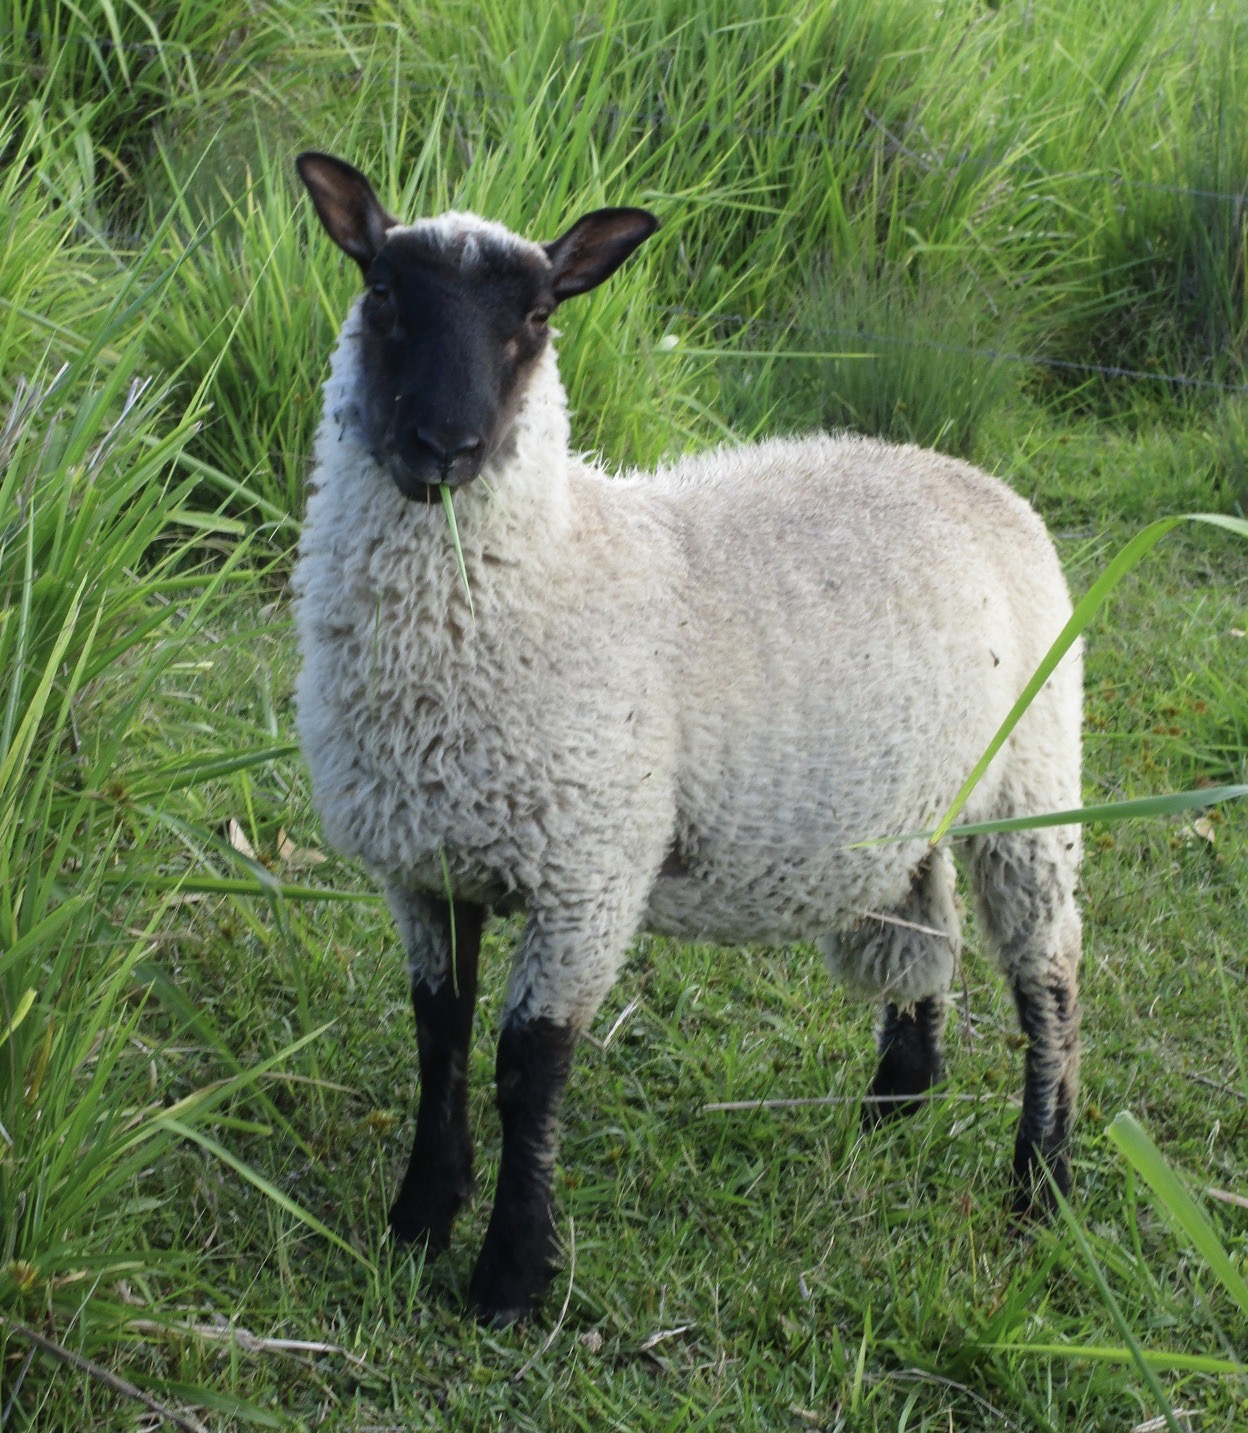 Ram lamb #2